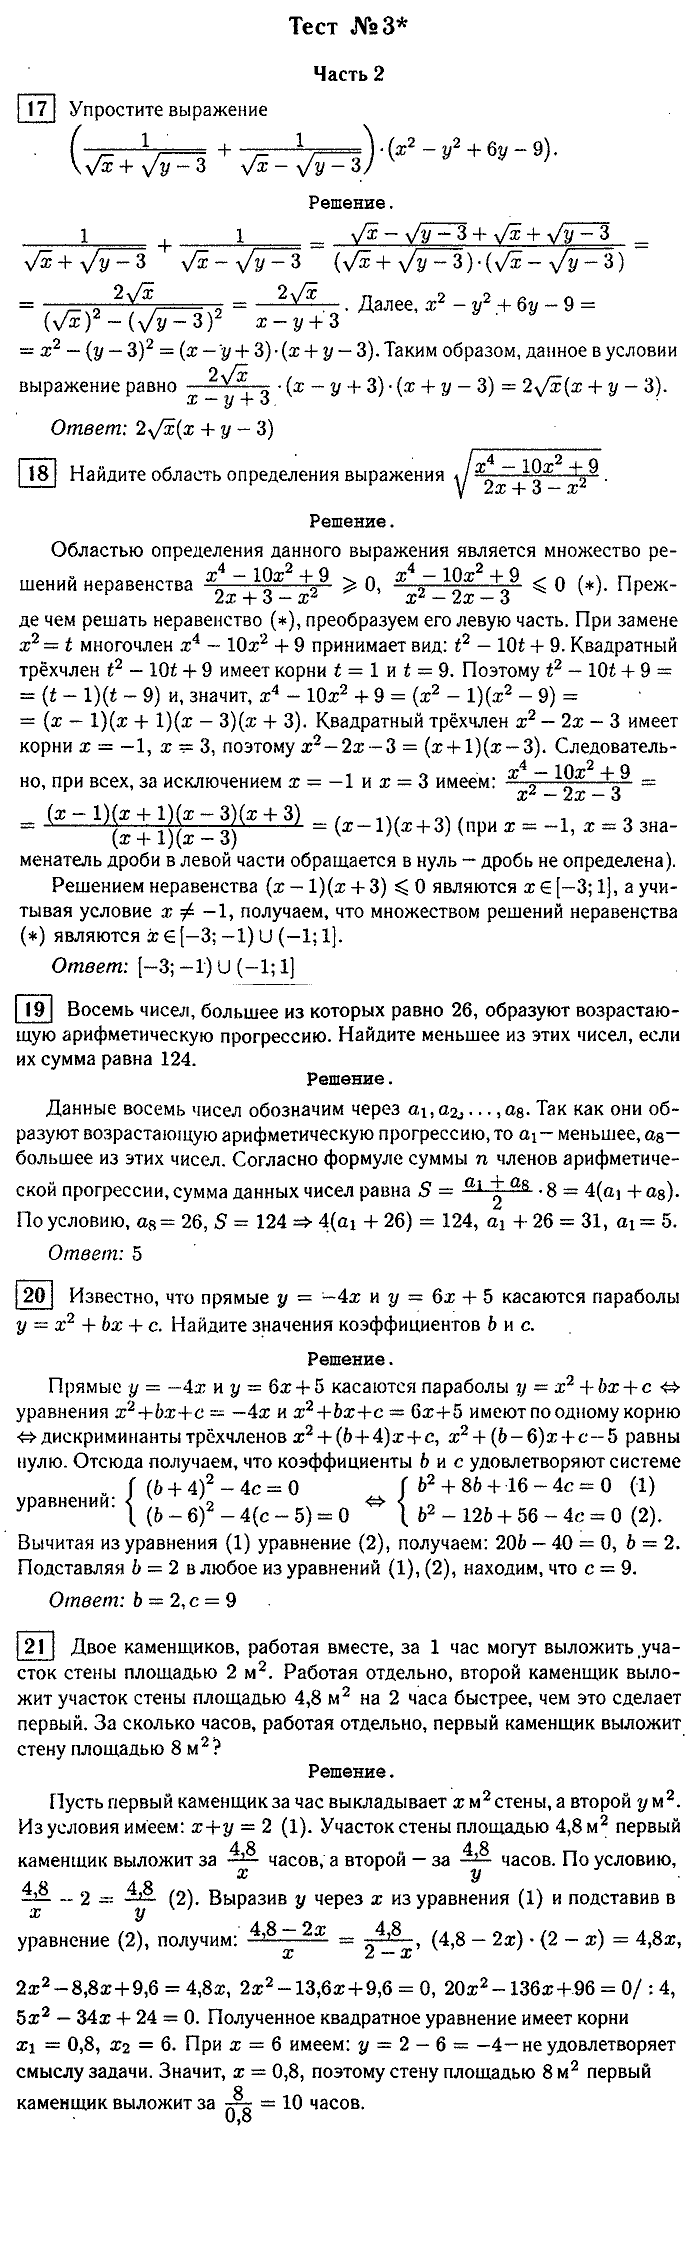 Итоговая аттестация, 9 класс, Мальцева, 2010, §5. Решение тестов 2005 г. Задание: Тест №3